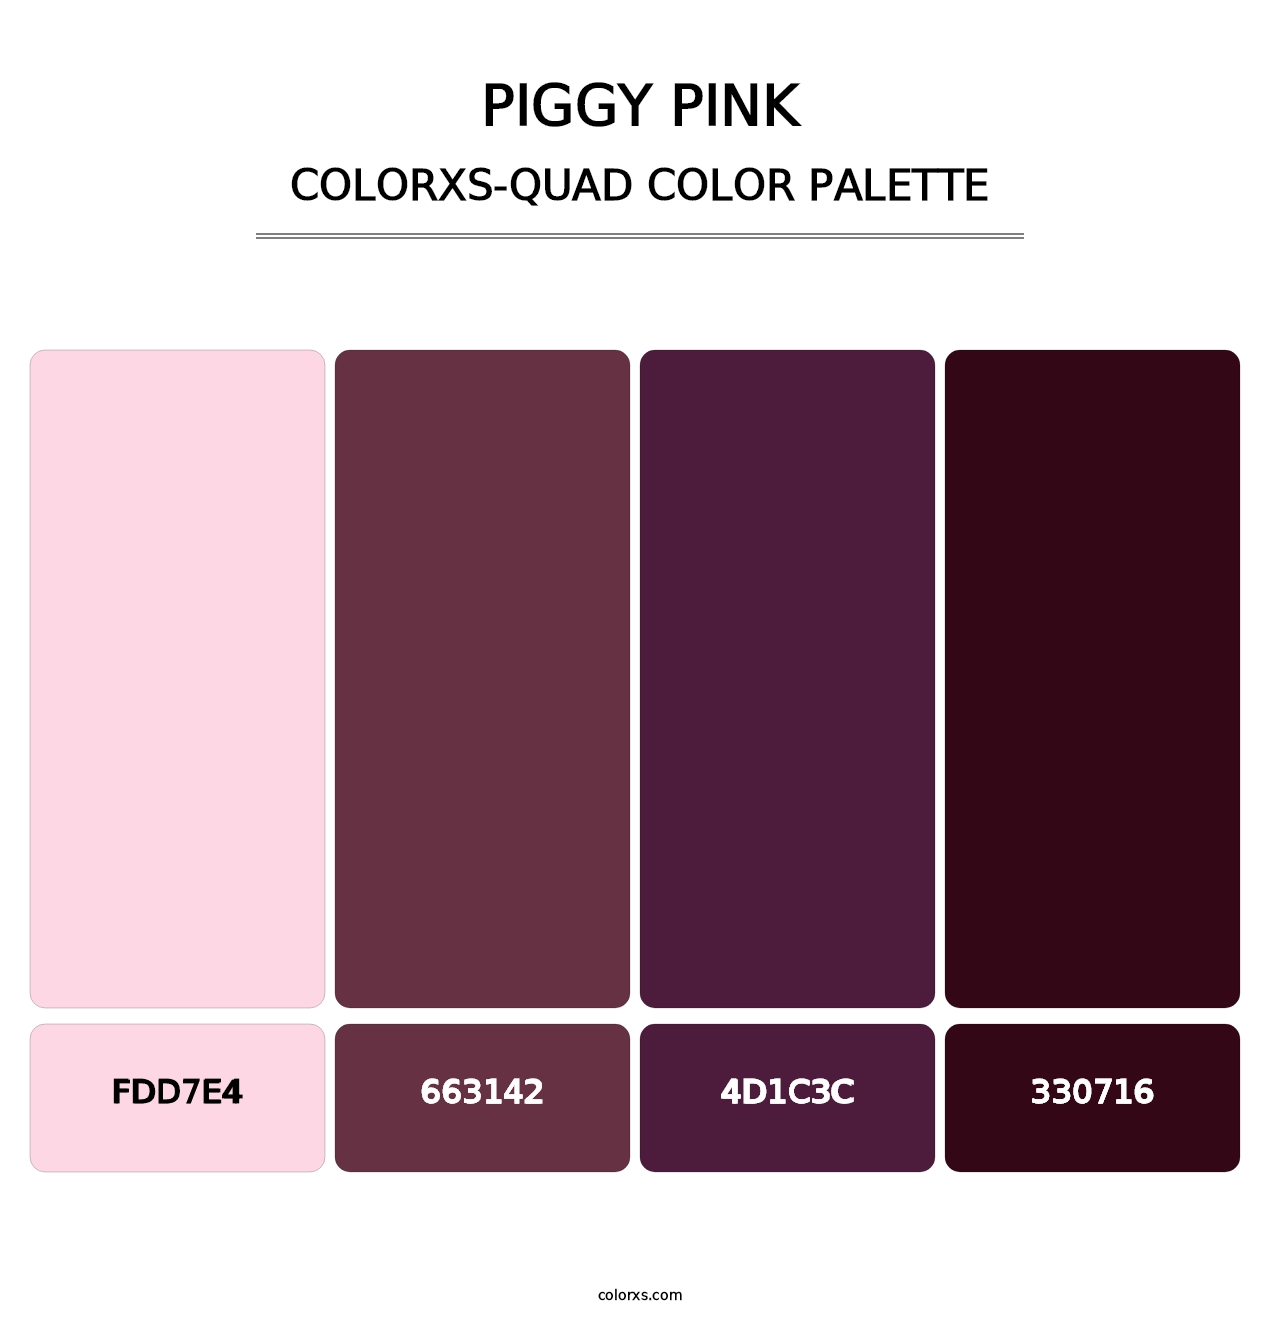 Piggy Pink - Colorxs Quad Palette